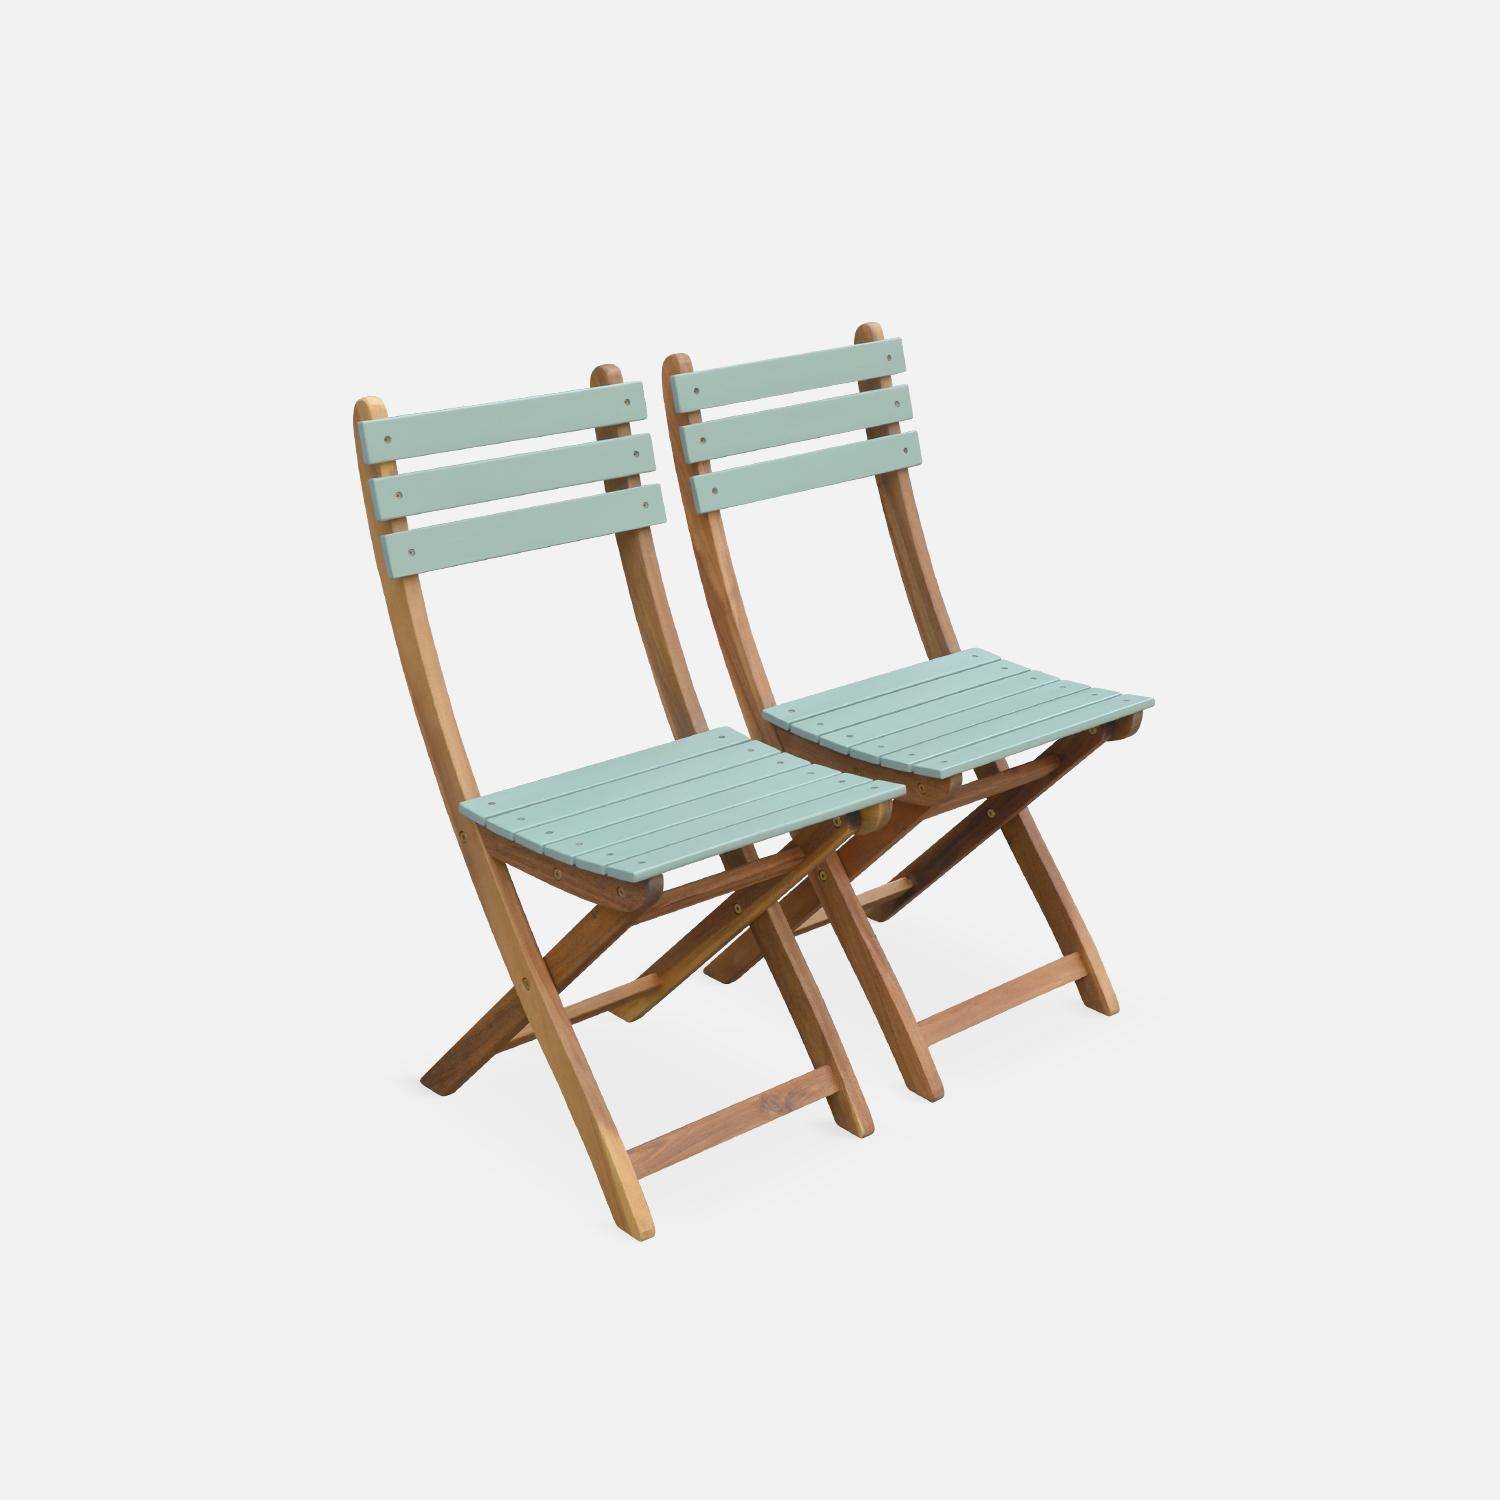 Conjunto de jardín de madera Bistro 60x60cm - Barcelona - verde grisáceo, mesa plegable bicolor con 2 sillas plegables, acacia,sweeek,Photo5